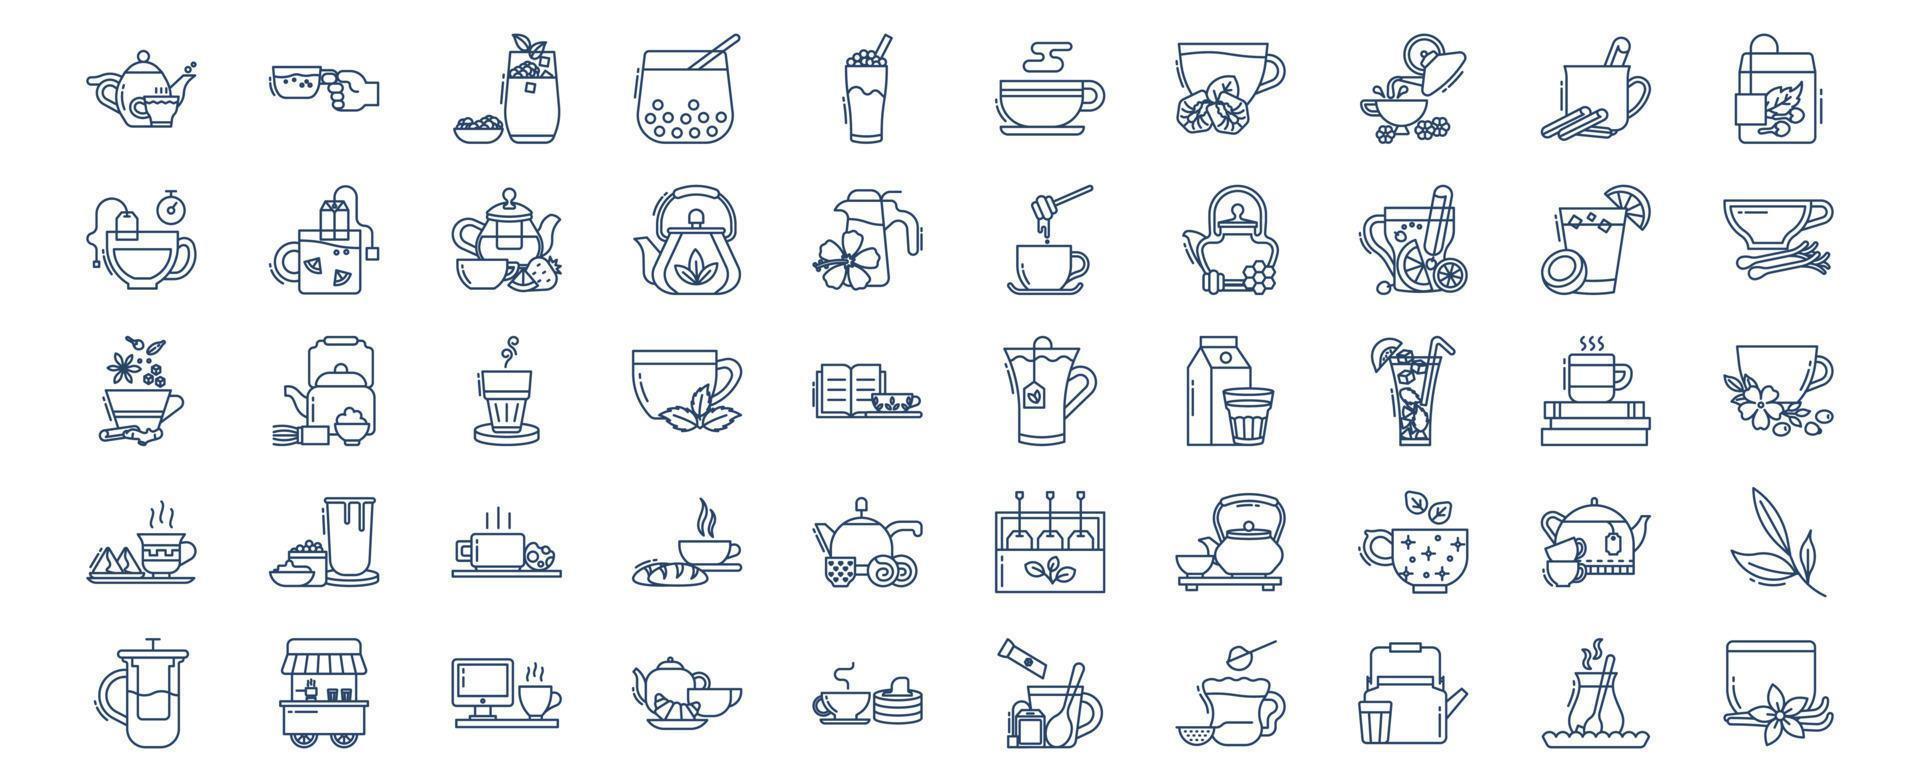 verzameling van pictogrammen verwant naar thee, inclusief pictogrammen Leuk vinden zwart thee, melk, bubbel thee, groen thee en meer. vector illustraties, pixel perfect reeks